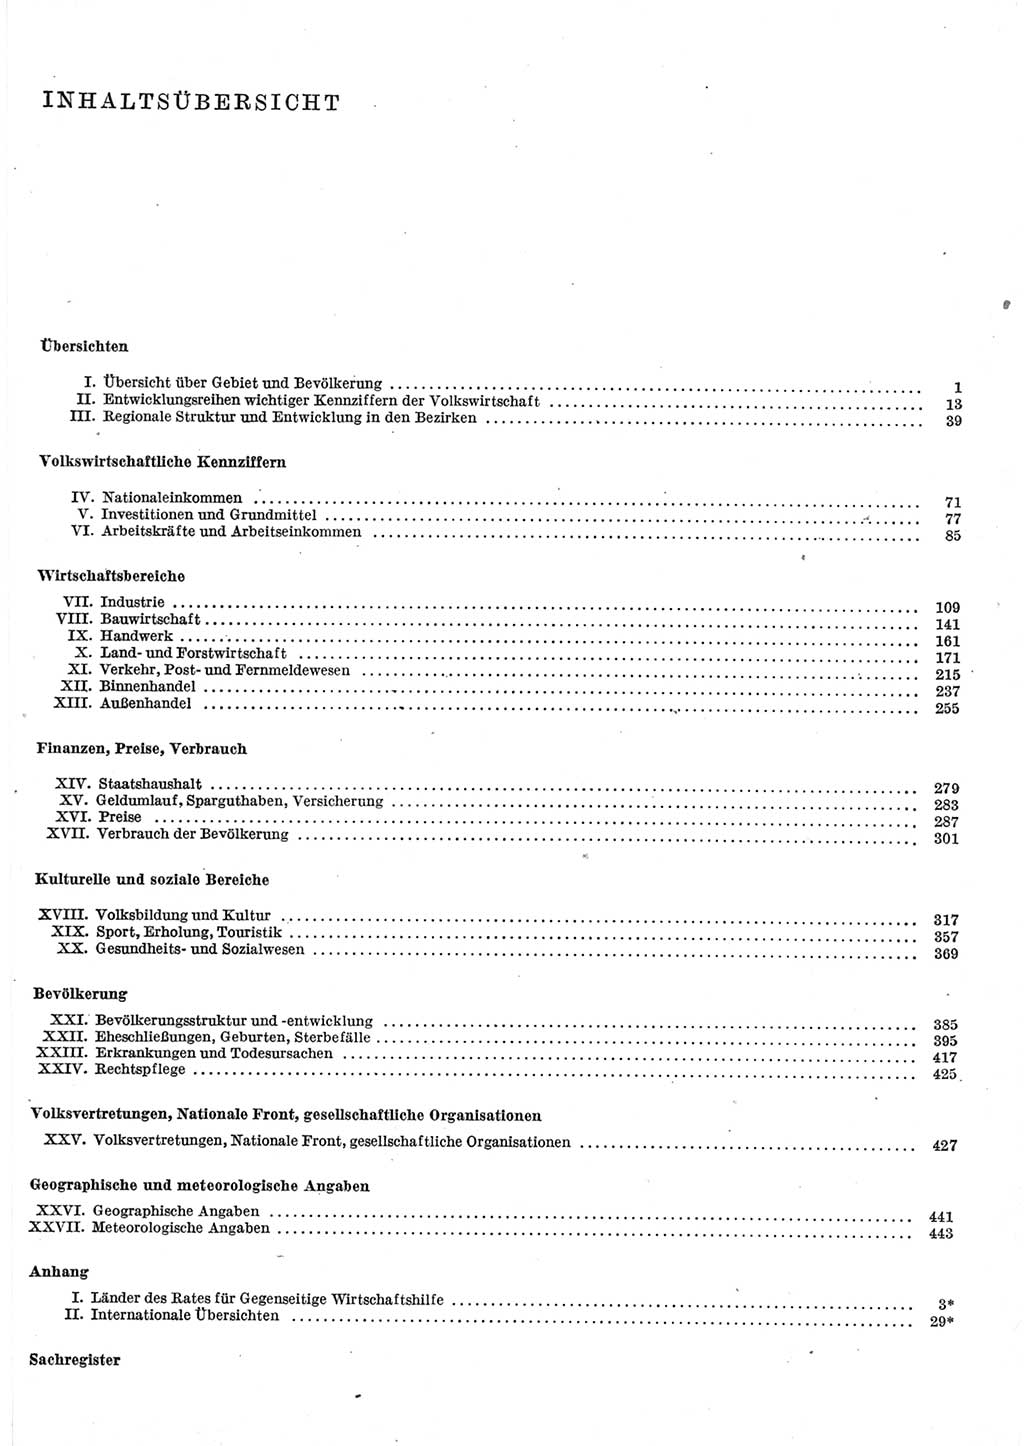 Statistisches Jahrbuch der Deutschen Demokratischen Republik (DDR) 1977, Seite 5 (Stat. Jb. DDR 1977, S. 5)